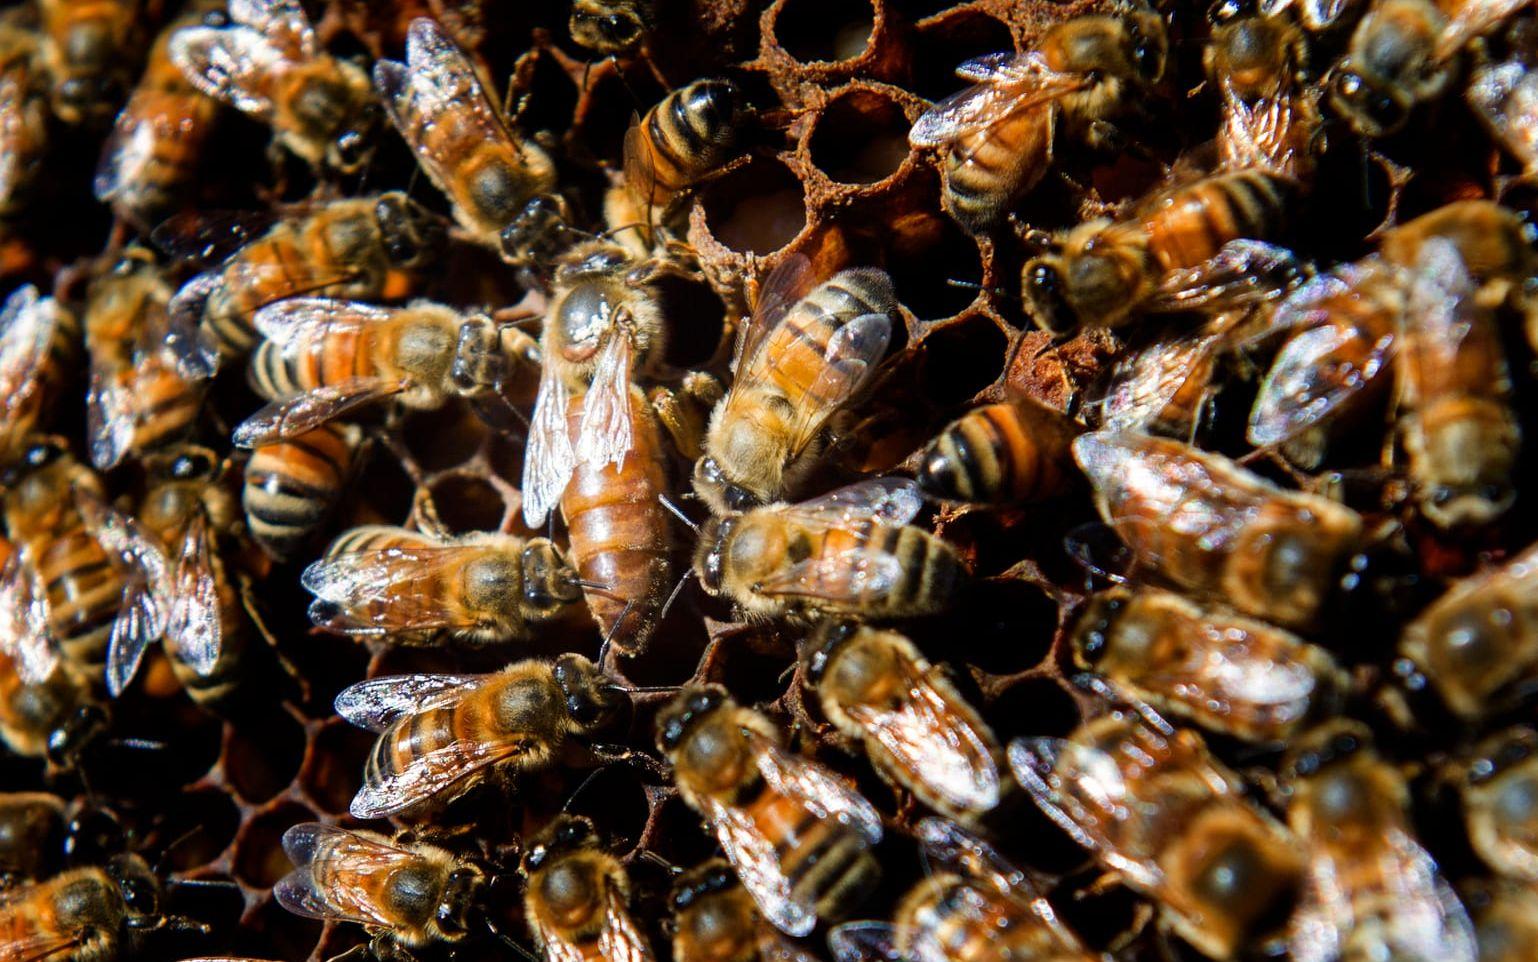 Slottsfrun. Om man tittar noga ser man ett bi som är mycket större än de andra. Japp, det är drottningen. Foto: Lasse Edwartz